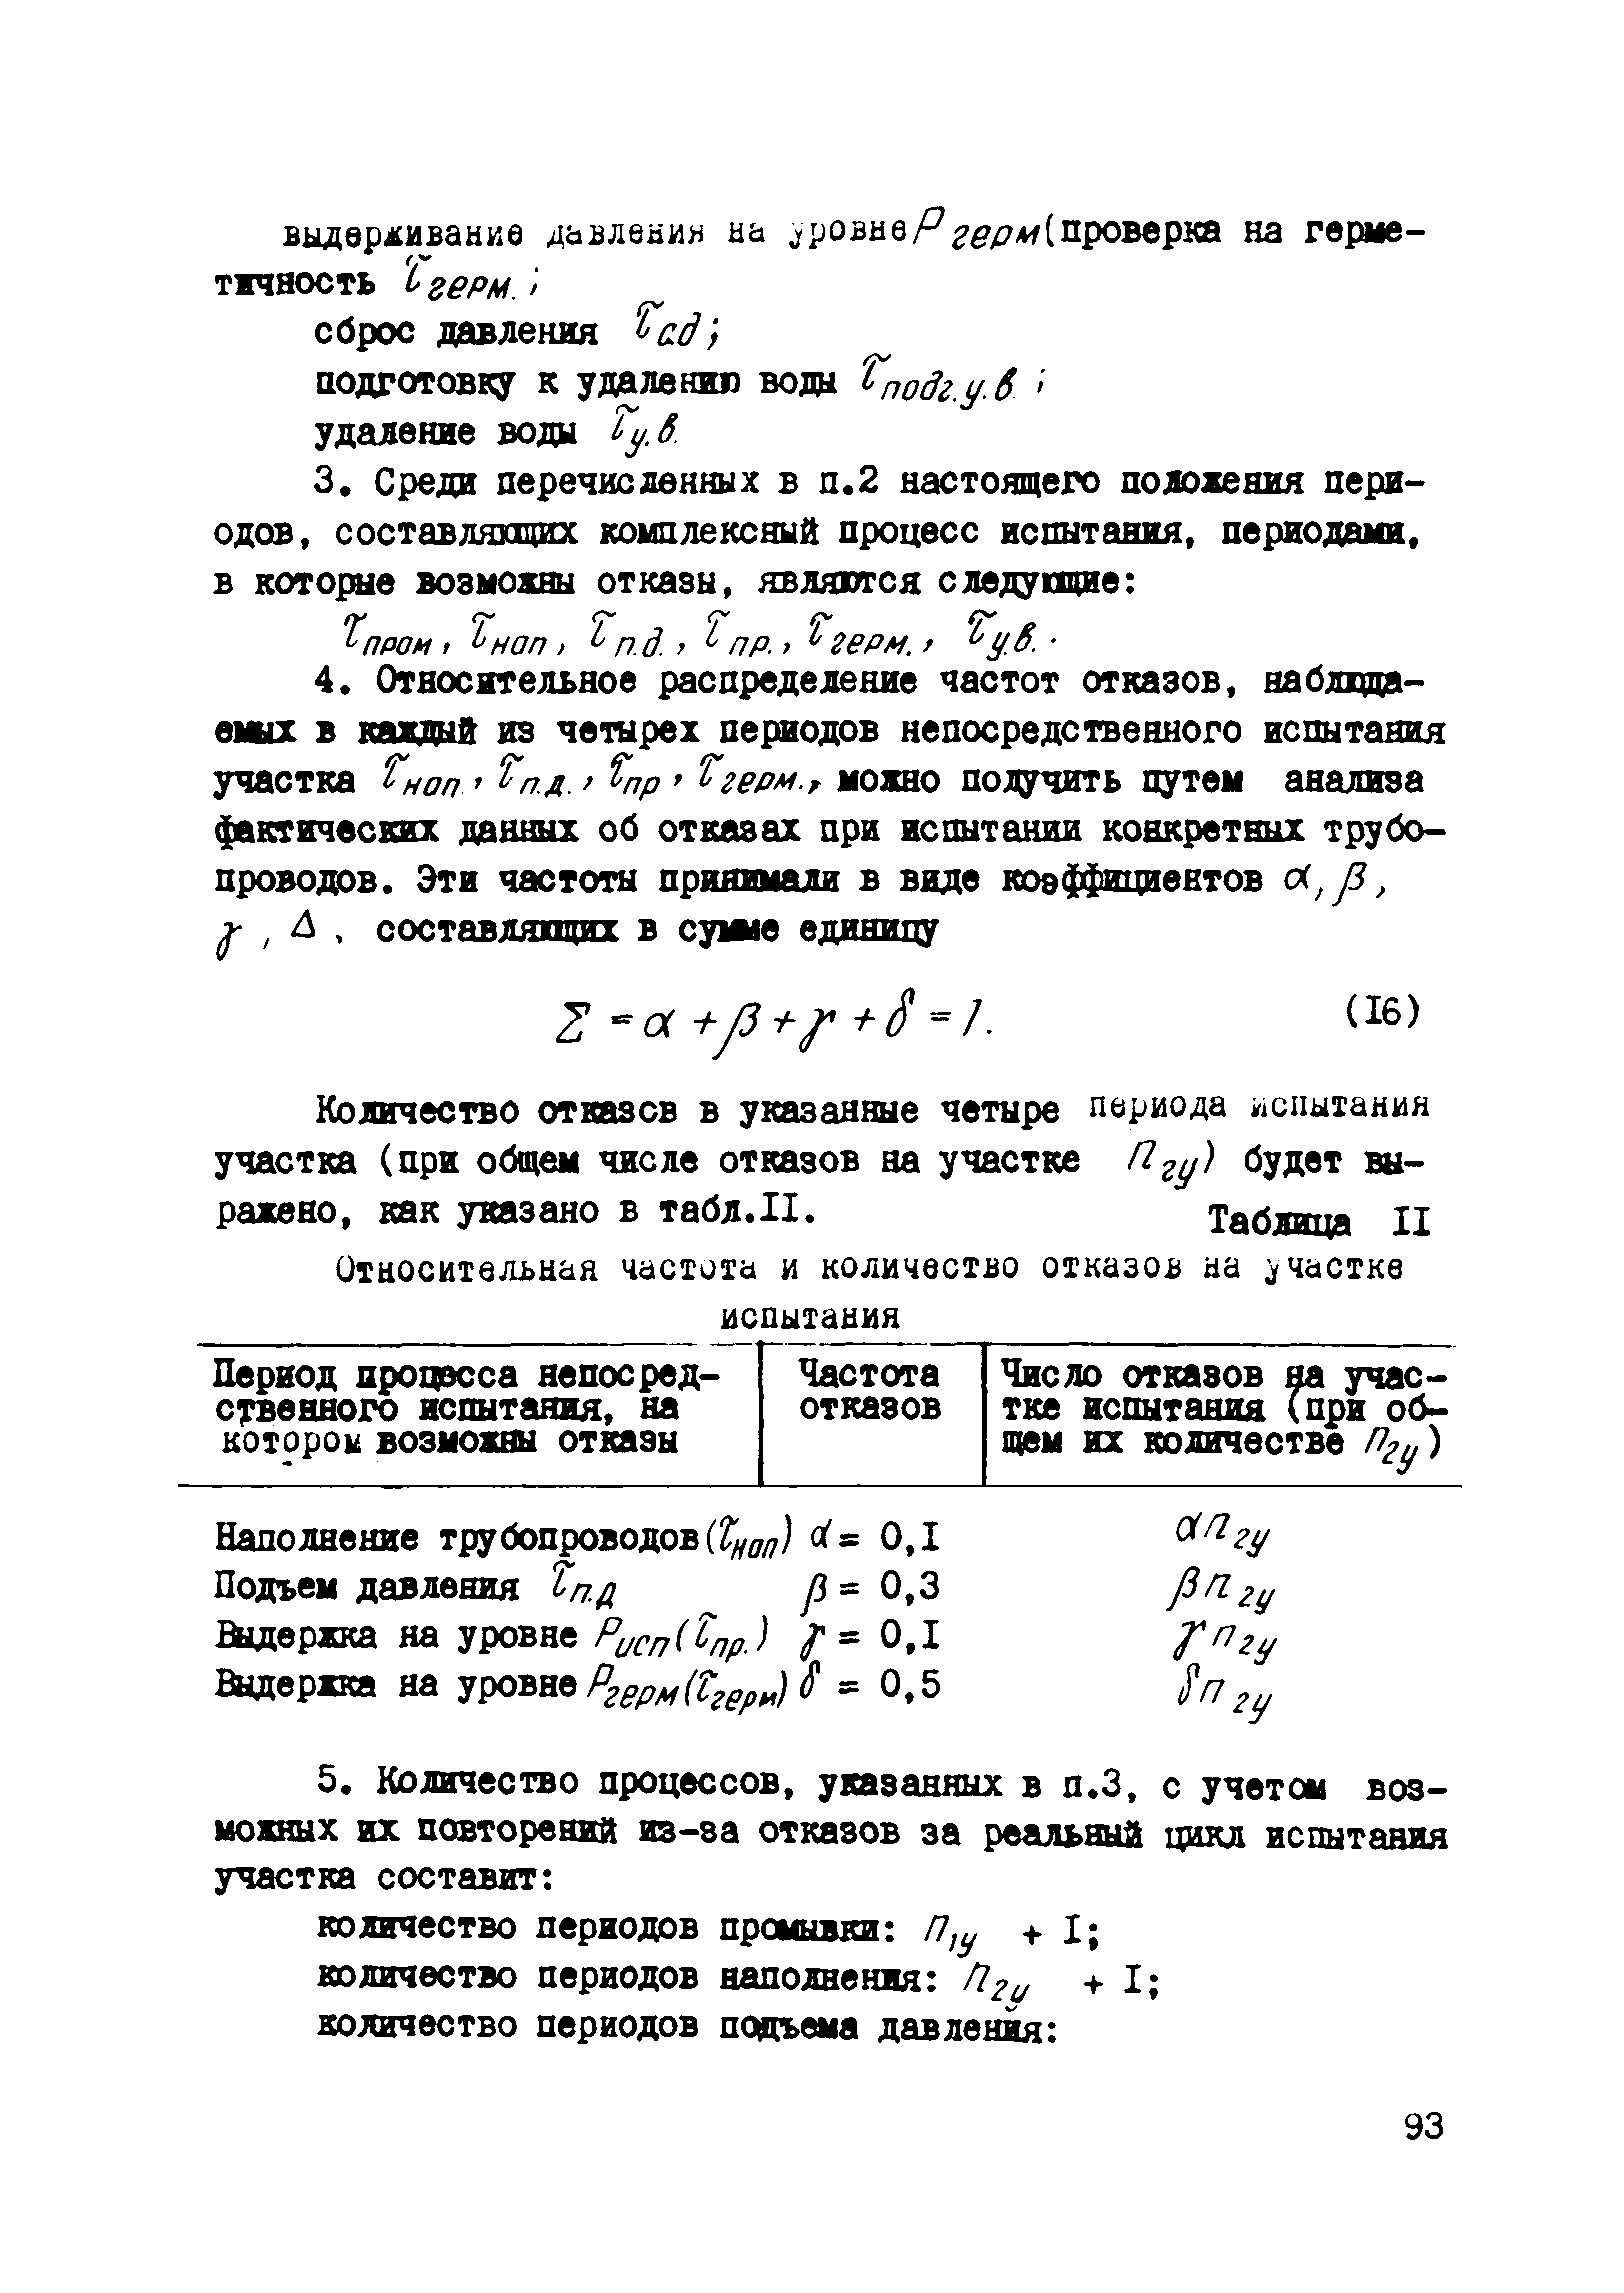 ВСН 2-128-81